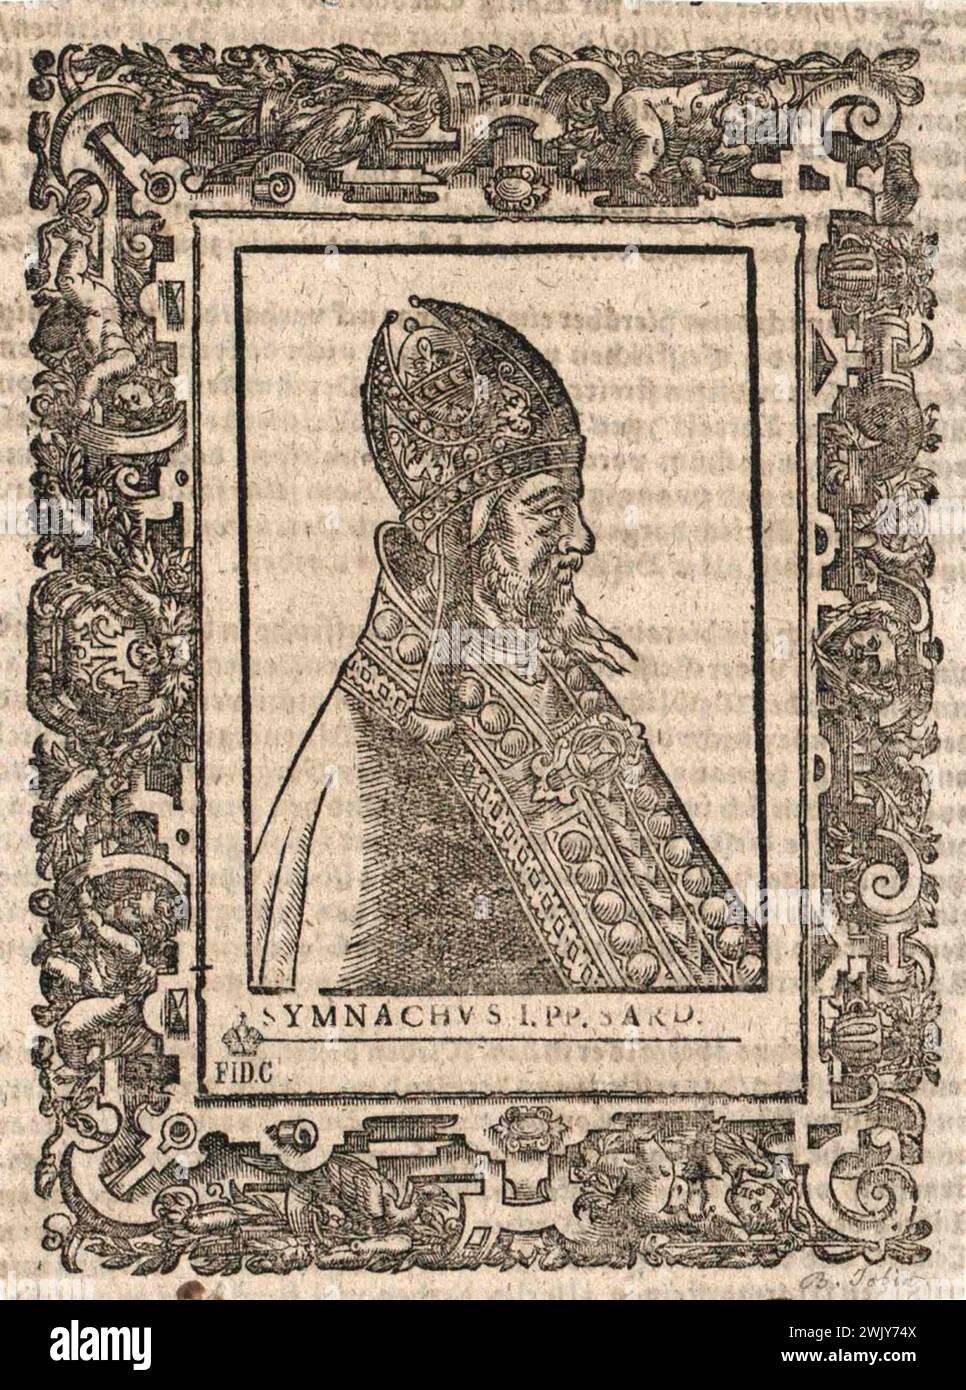 Ein Kupferstich des Papstes Symmachus aus dem 16. Jahrhundert, der von 498 bis 514 Jahre alt war. Er war der 51. Papst. Stockfoto